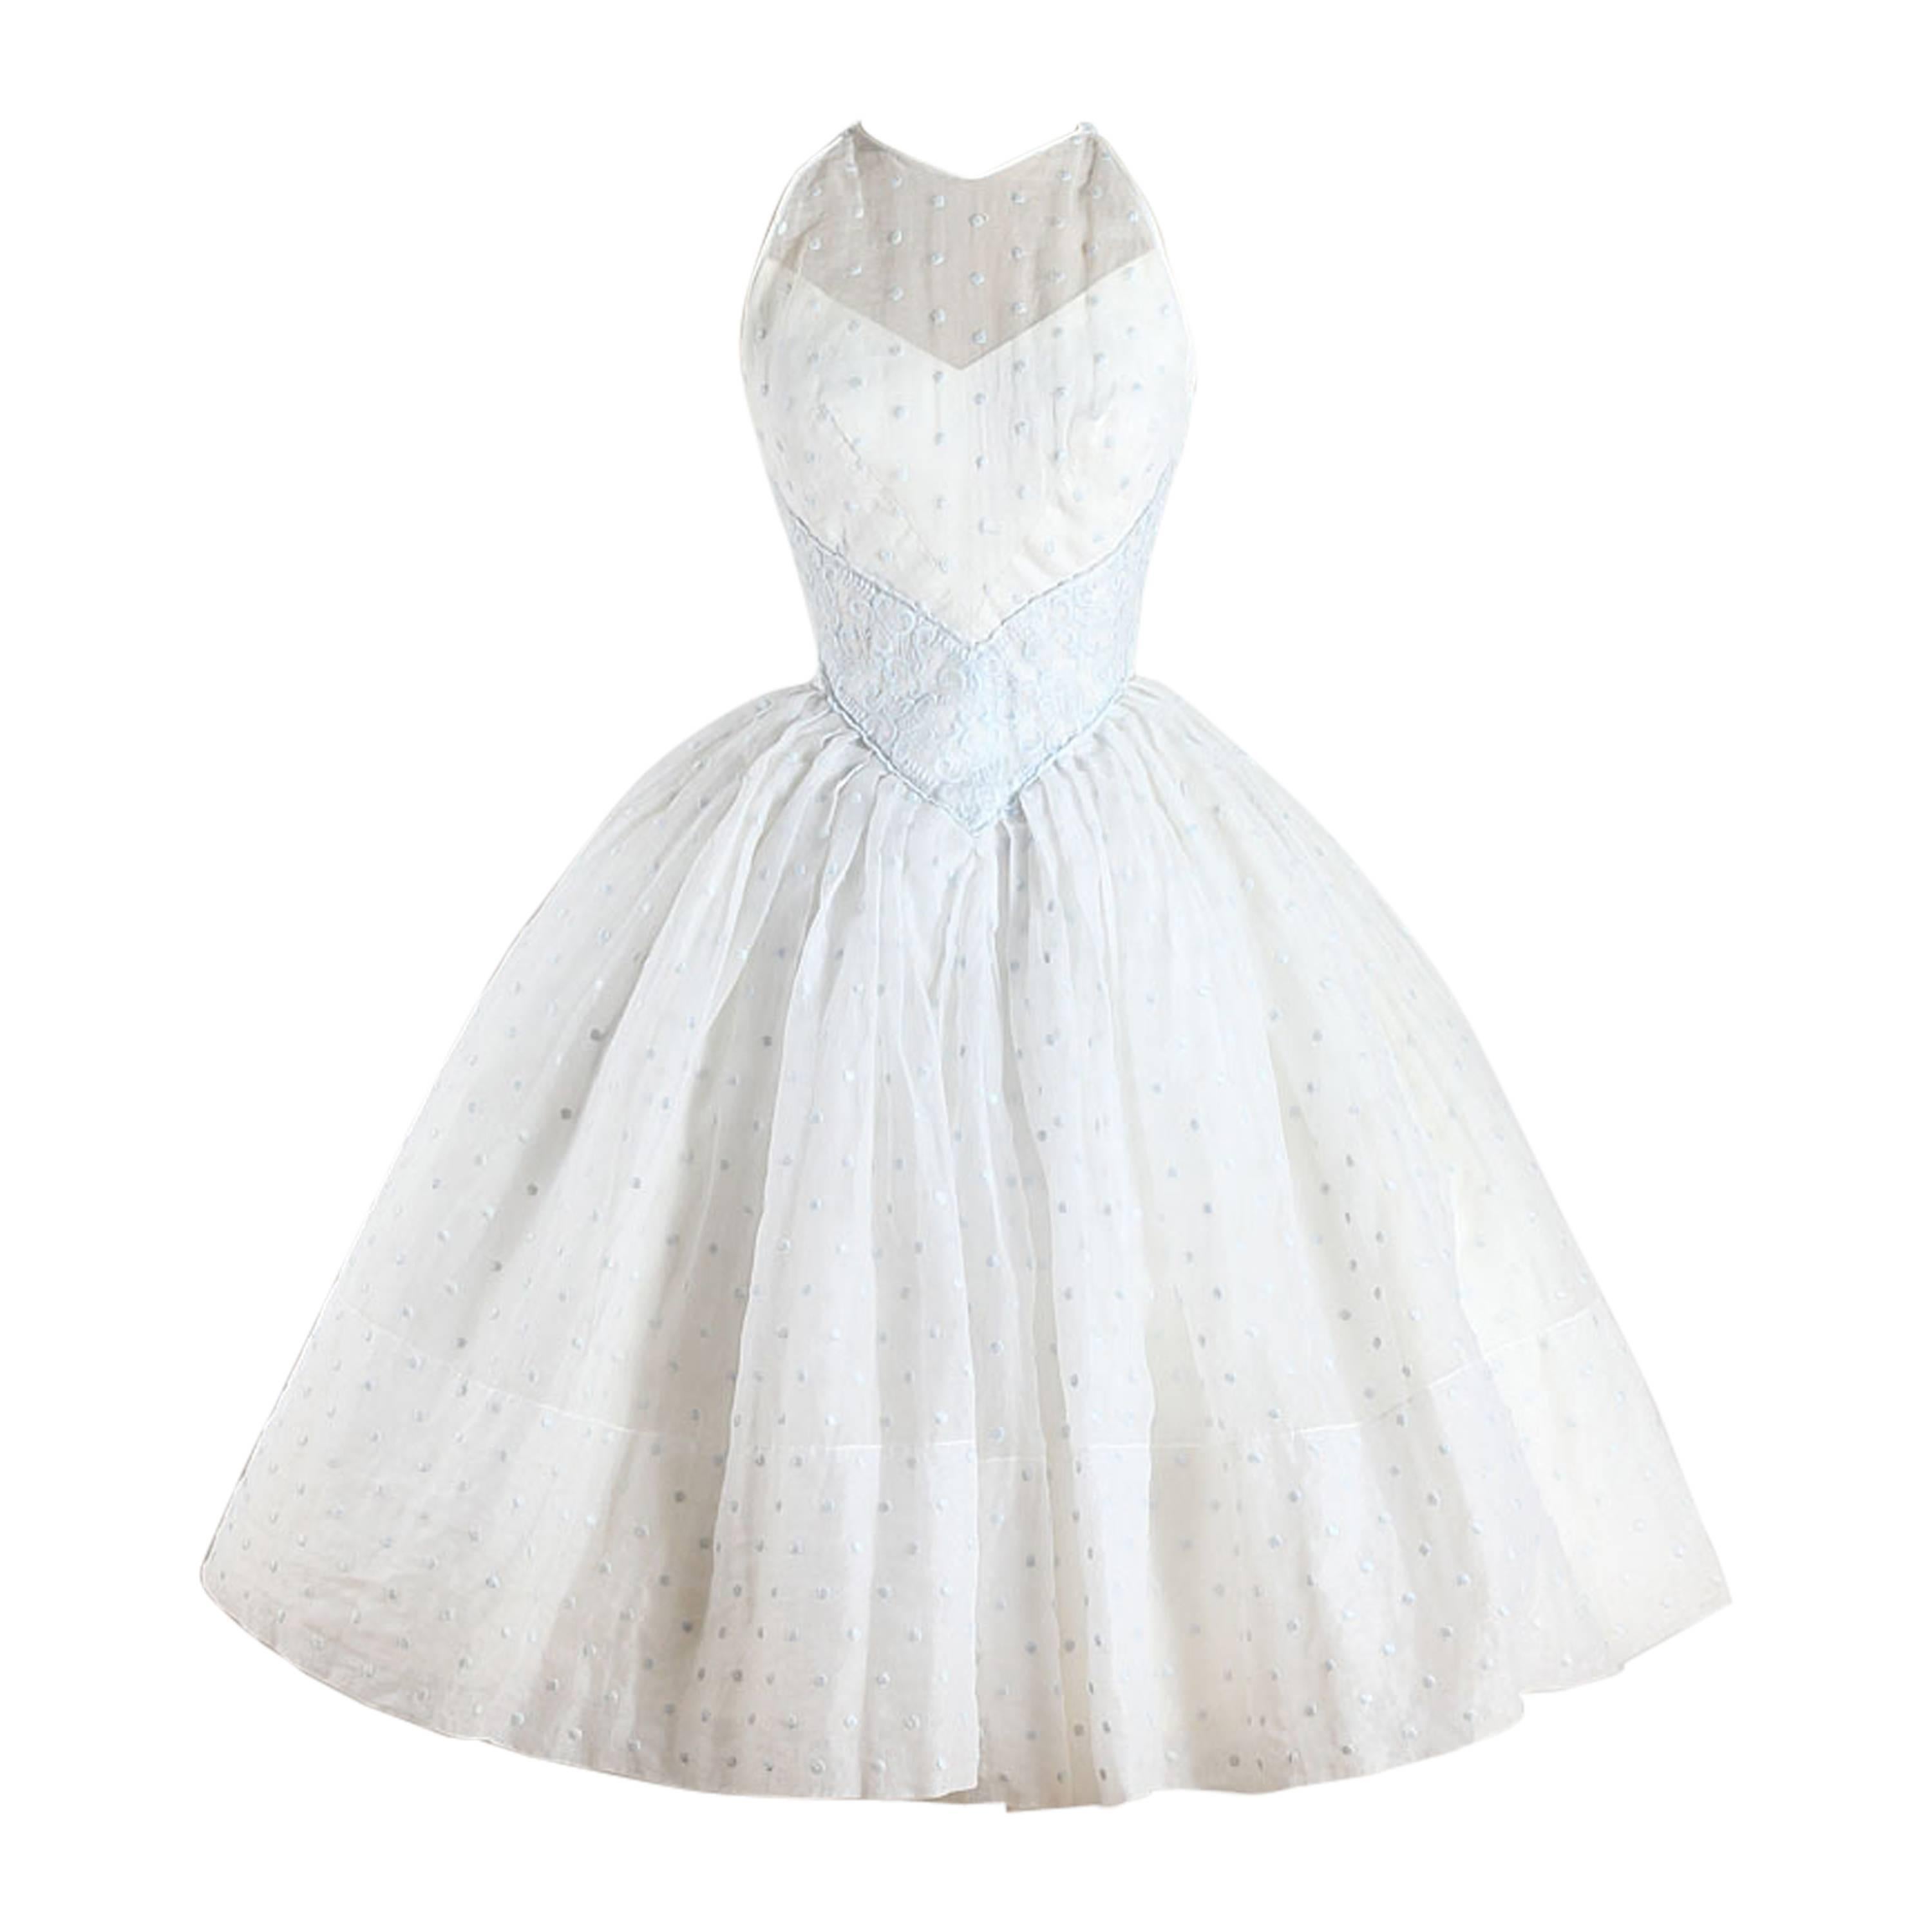 Vintage 1950s White Polka Dot Organza Dress For Sale